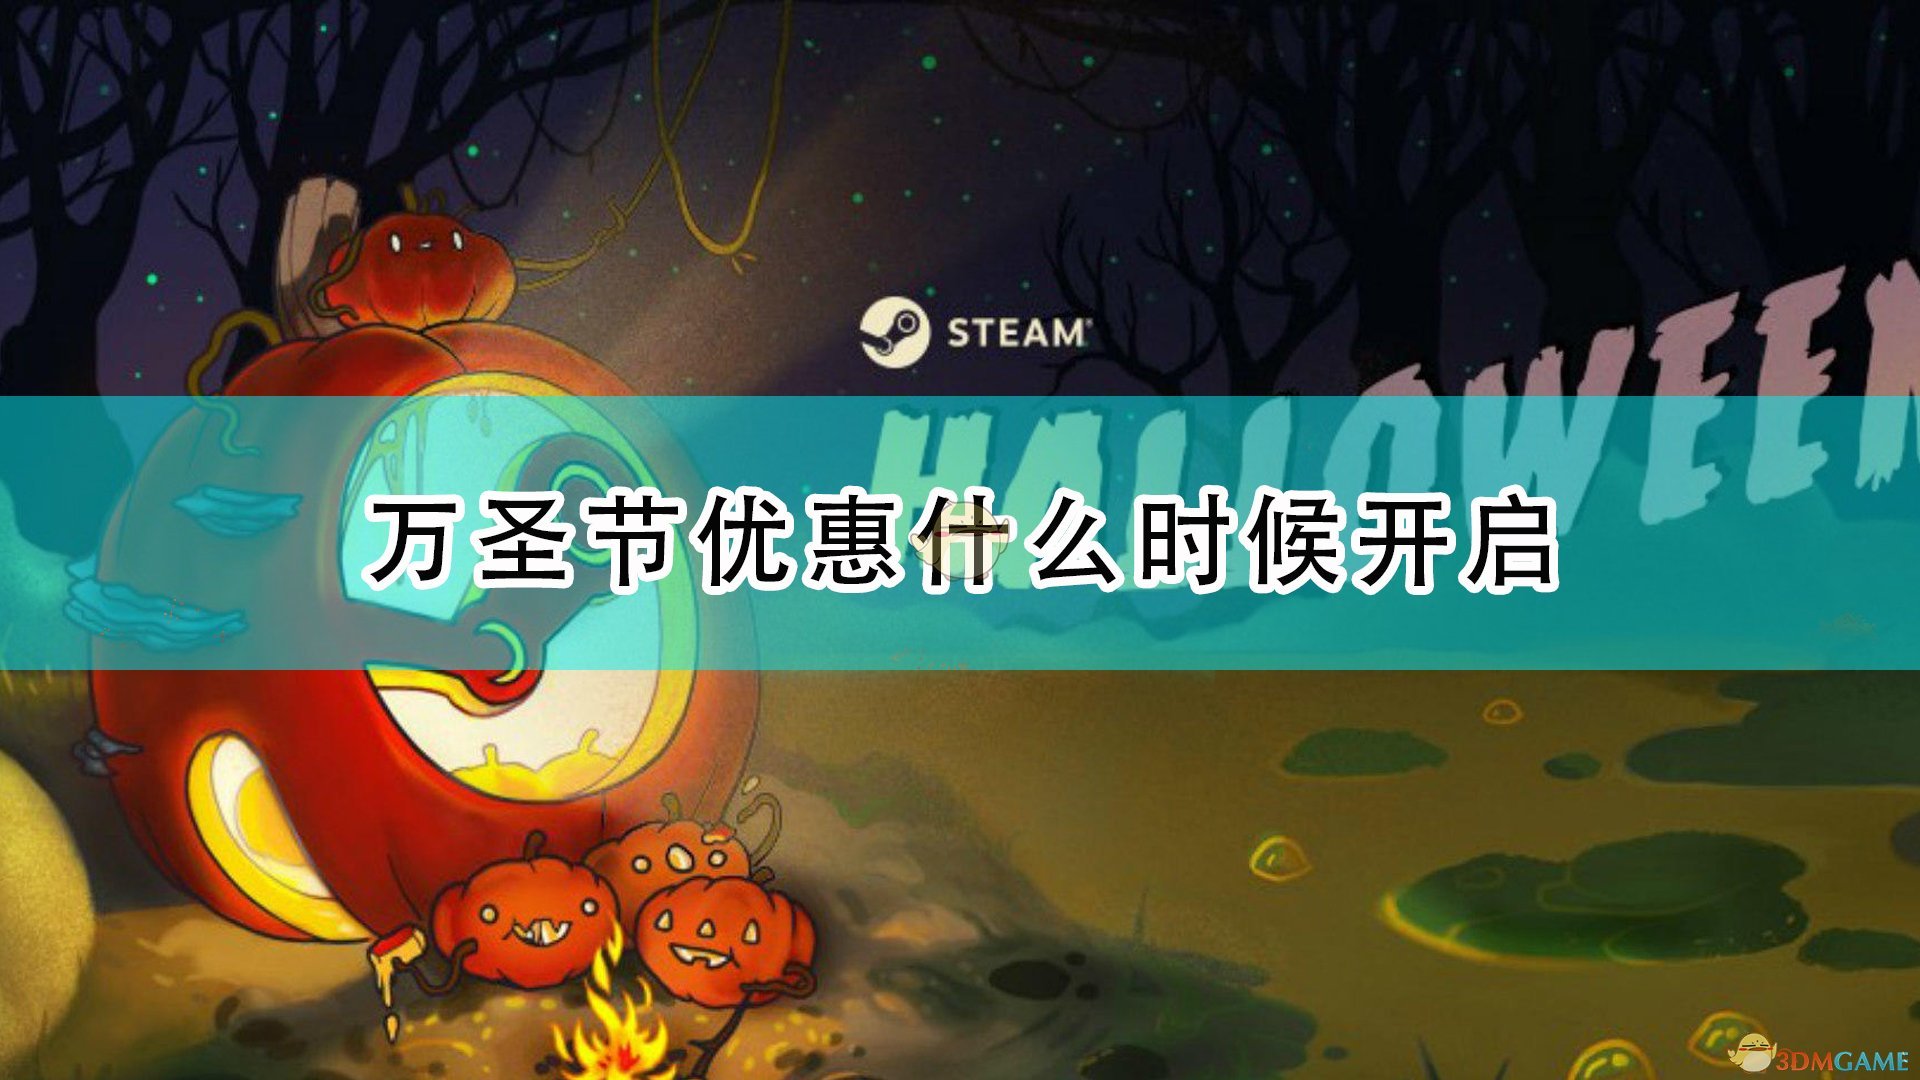 Steam2021万圣节特卖时间介绍